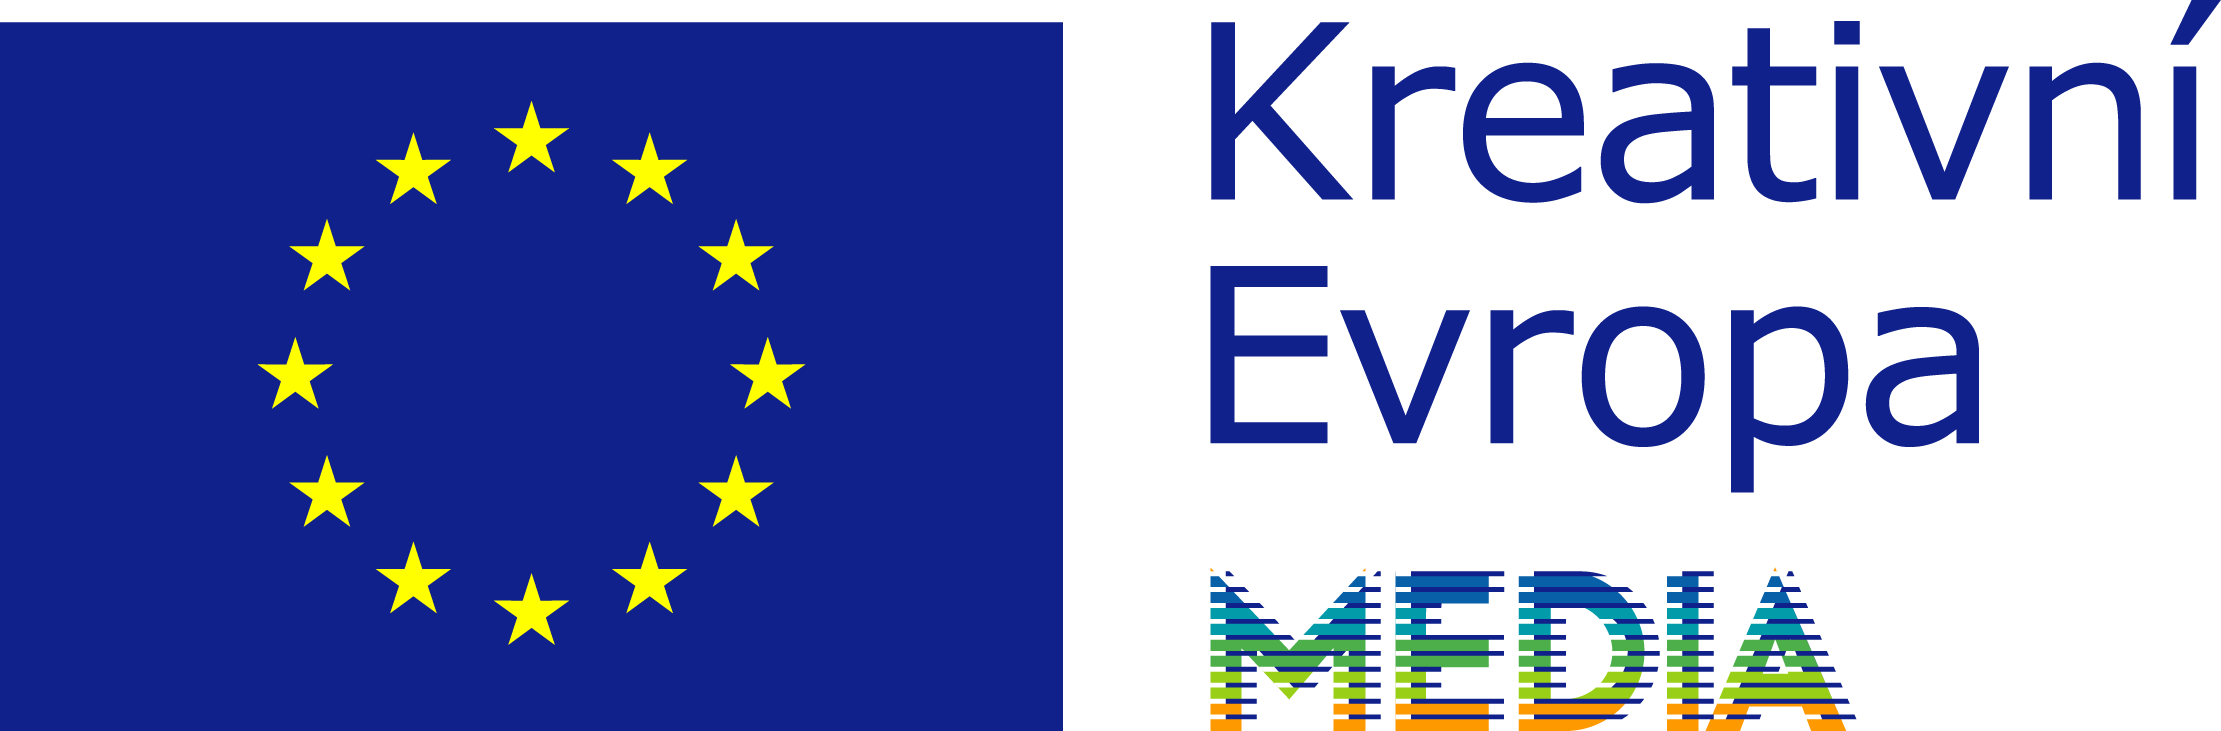 EU_flag-Crea_EU_MEDIA_EN.png